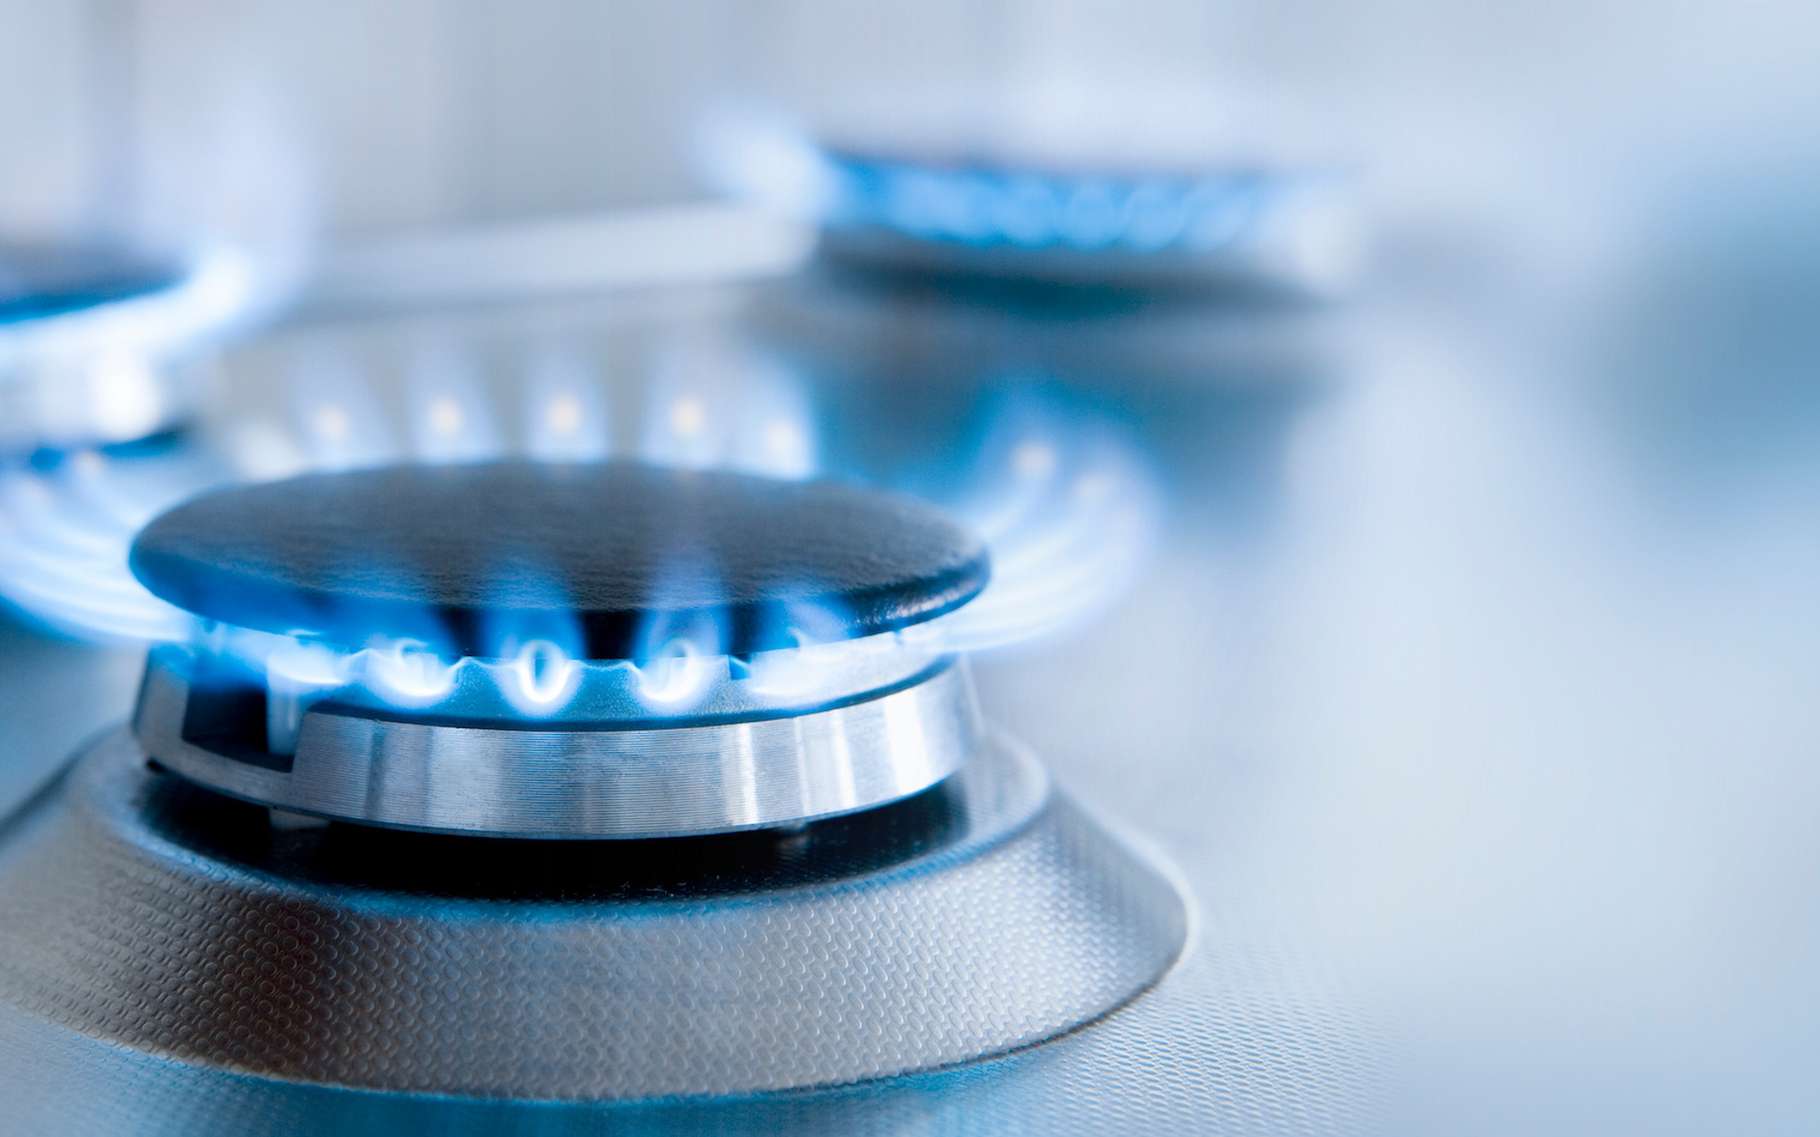 Les cuisinières à gaz représentent un réel danger pour la santé